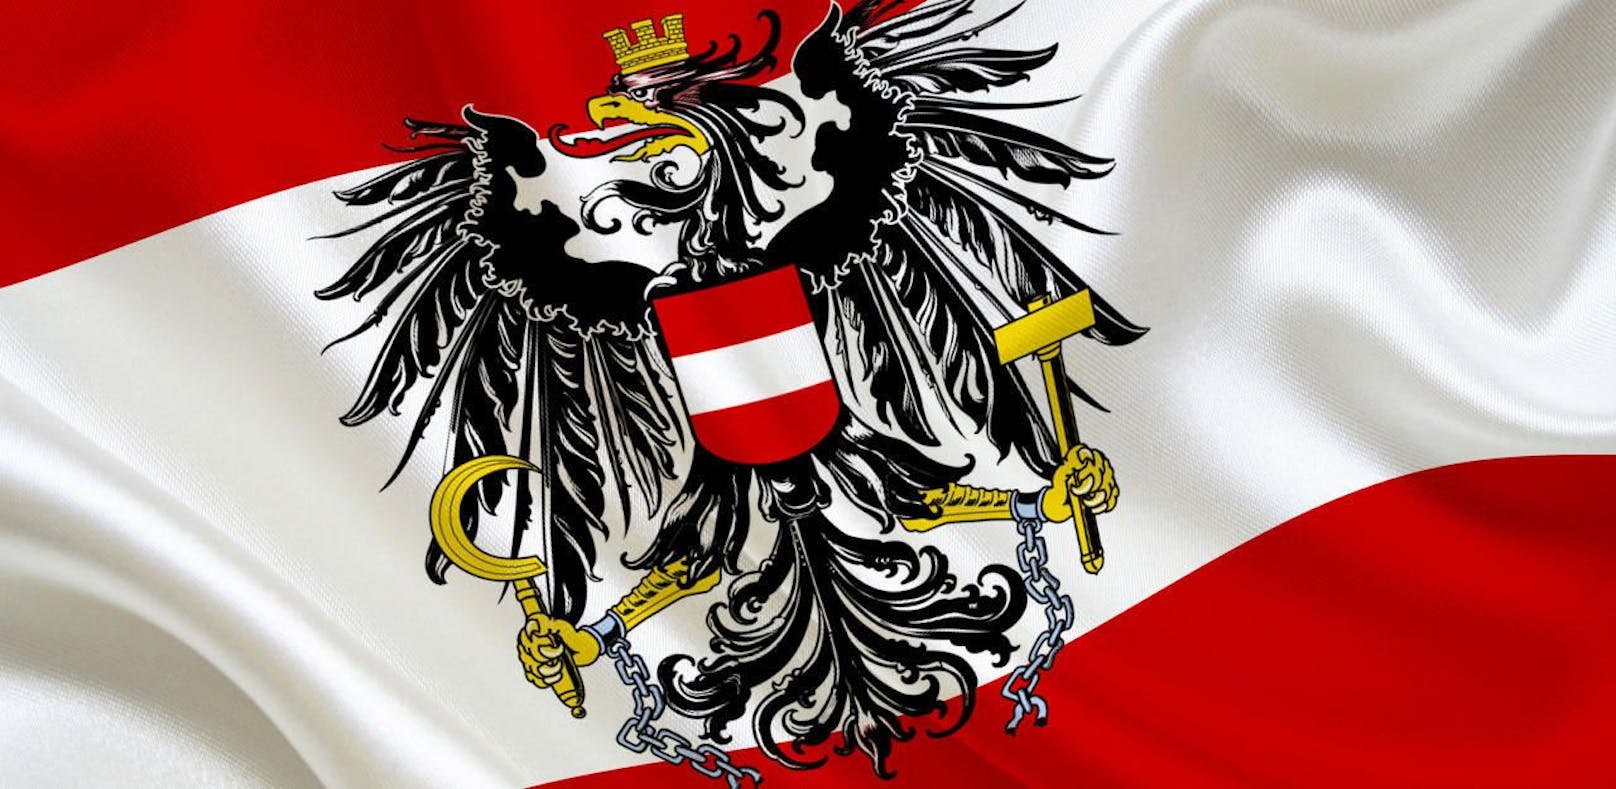 Welcher Österreicher hat für Sie in diesem Jahr am meisten bewegt?